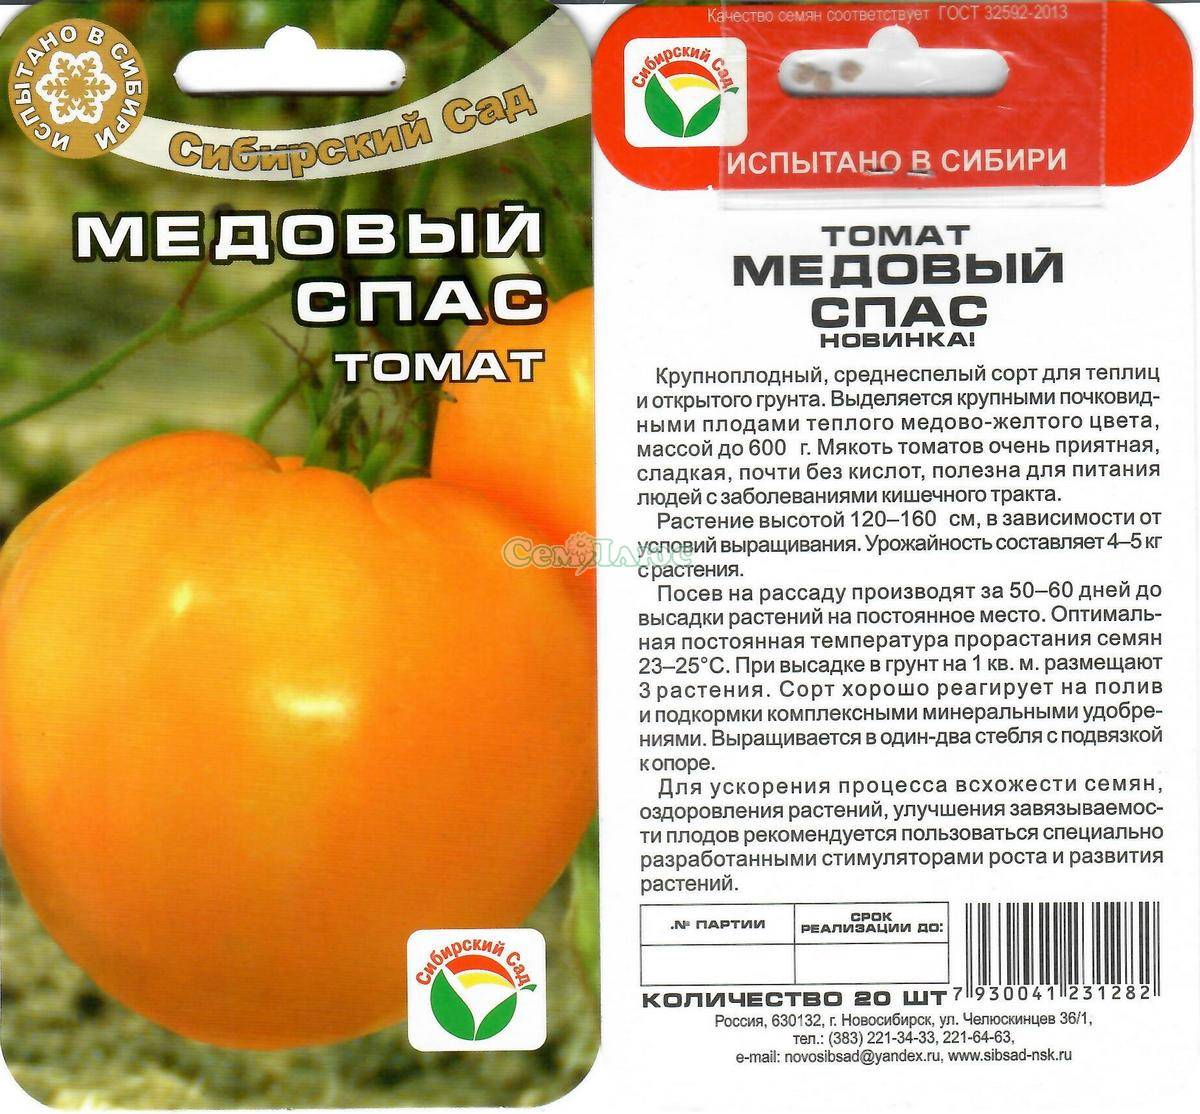 Томат медовый спас: описание сорта, отзывы (21), фото, урожайность | tomatland.ru